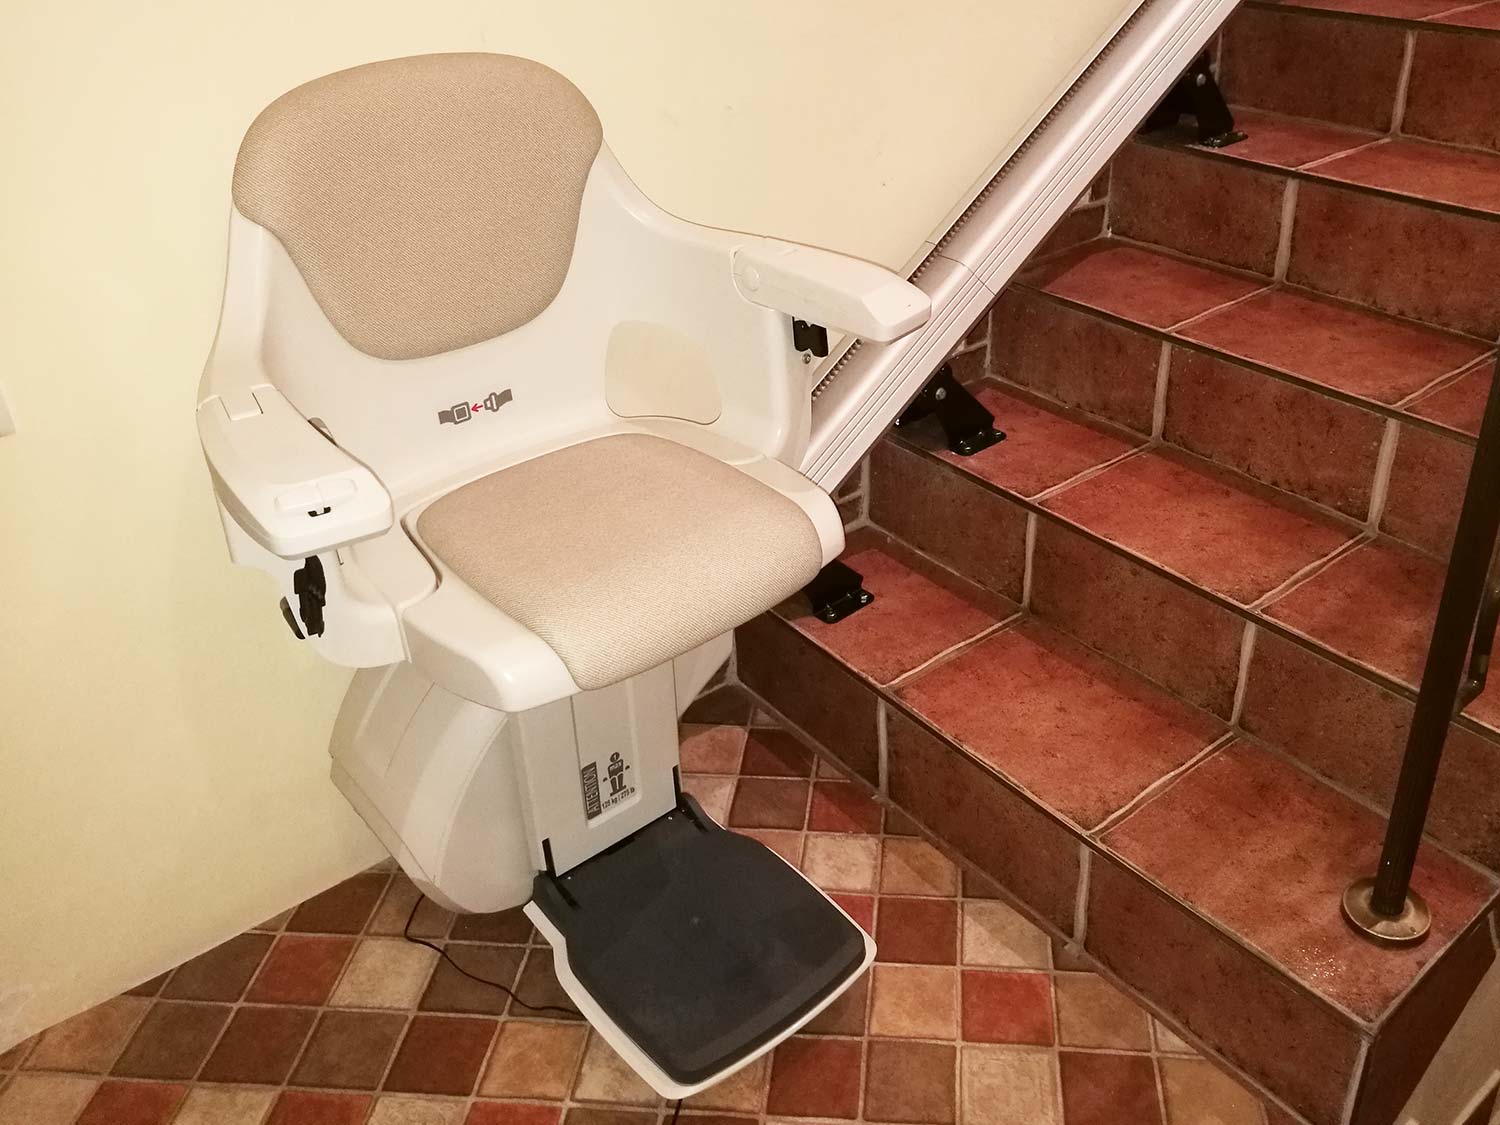 Krzesło schodowe HomeGlide